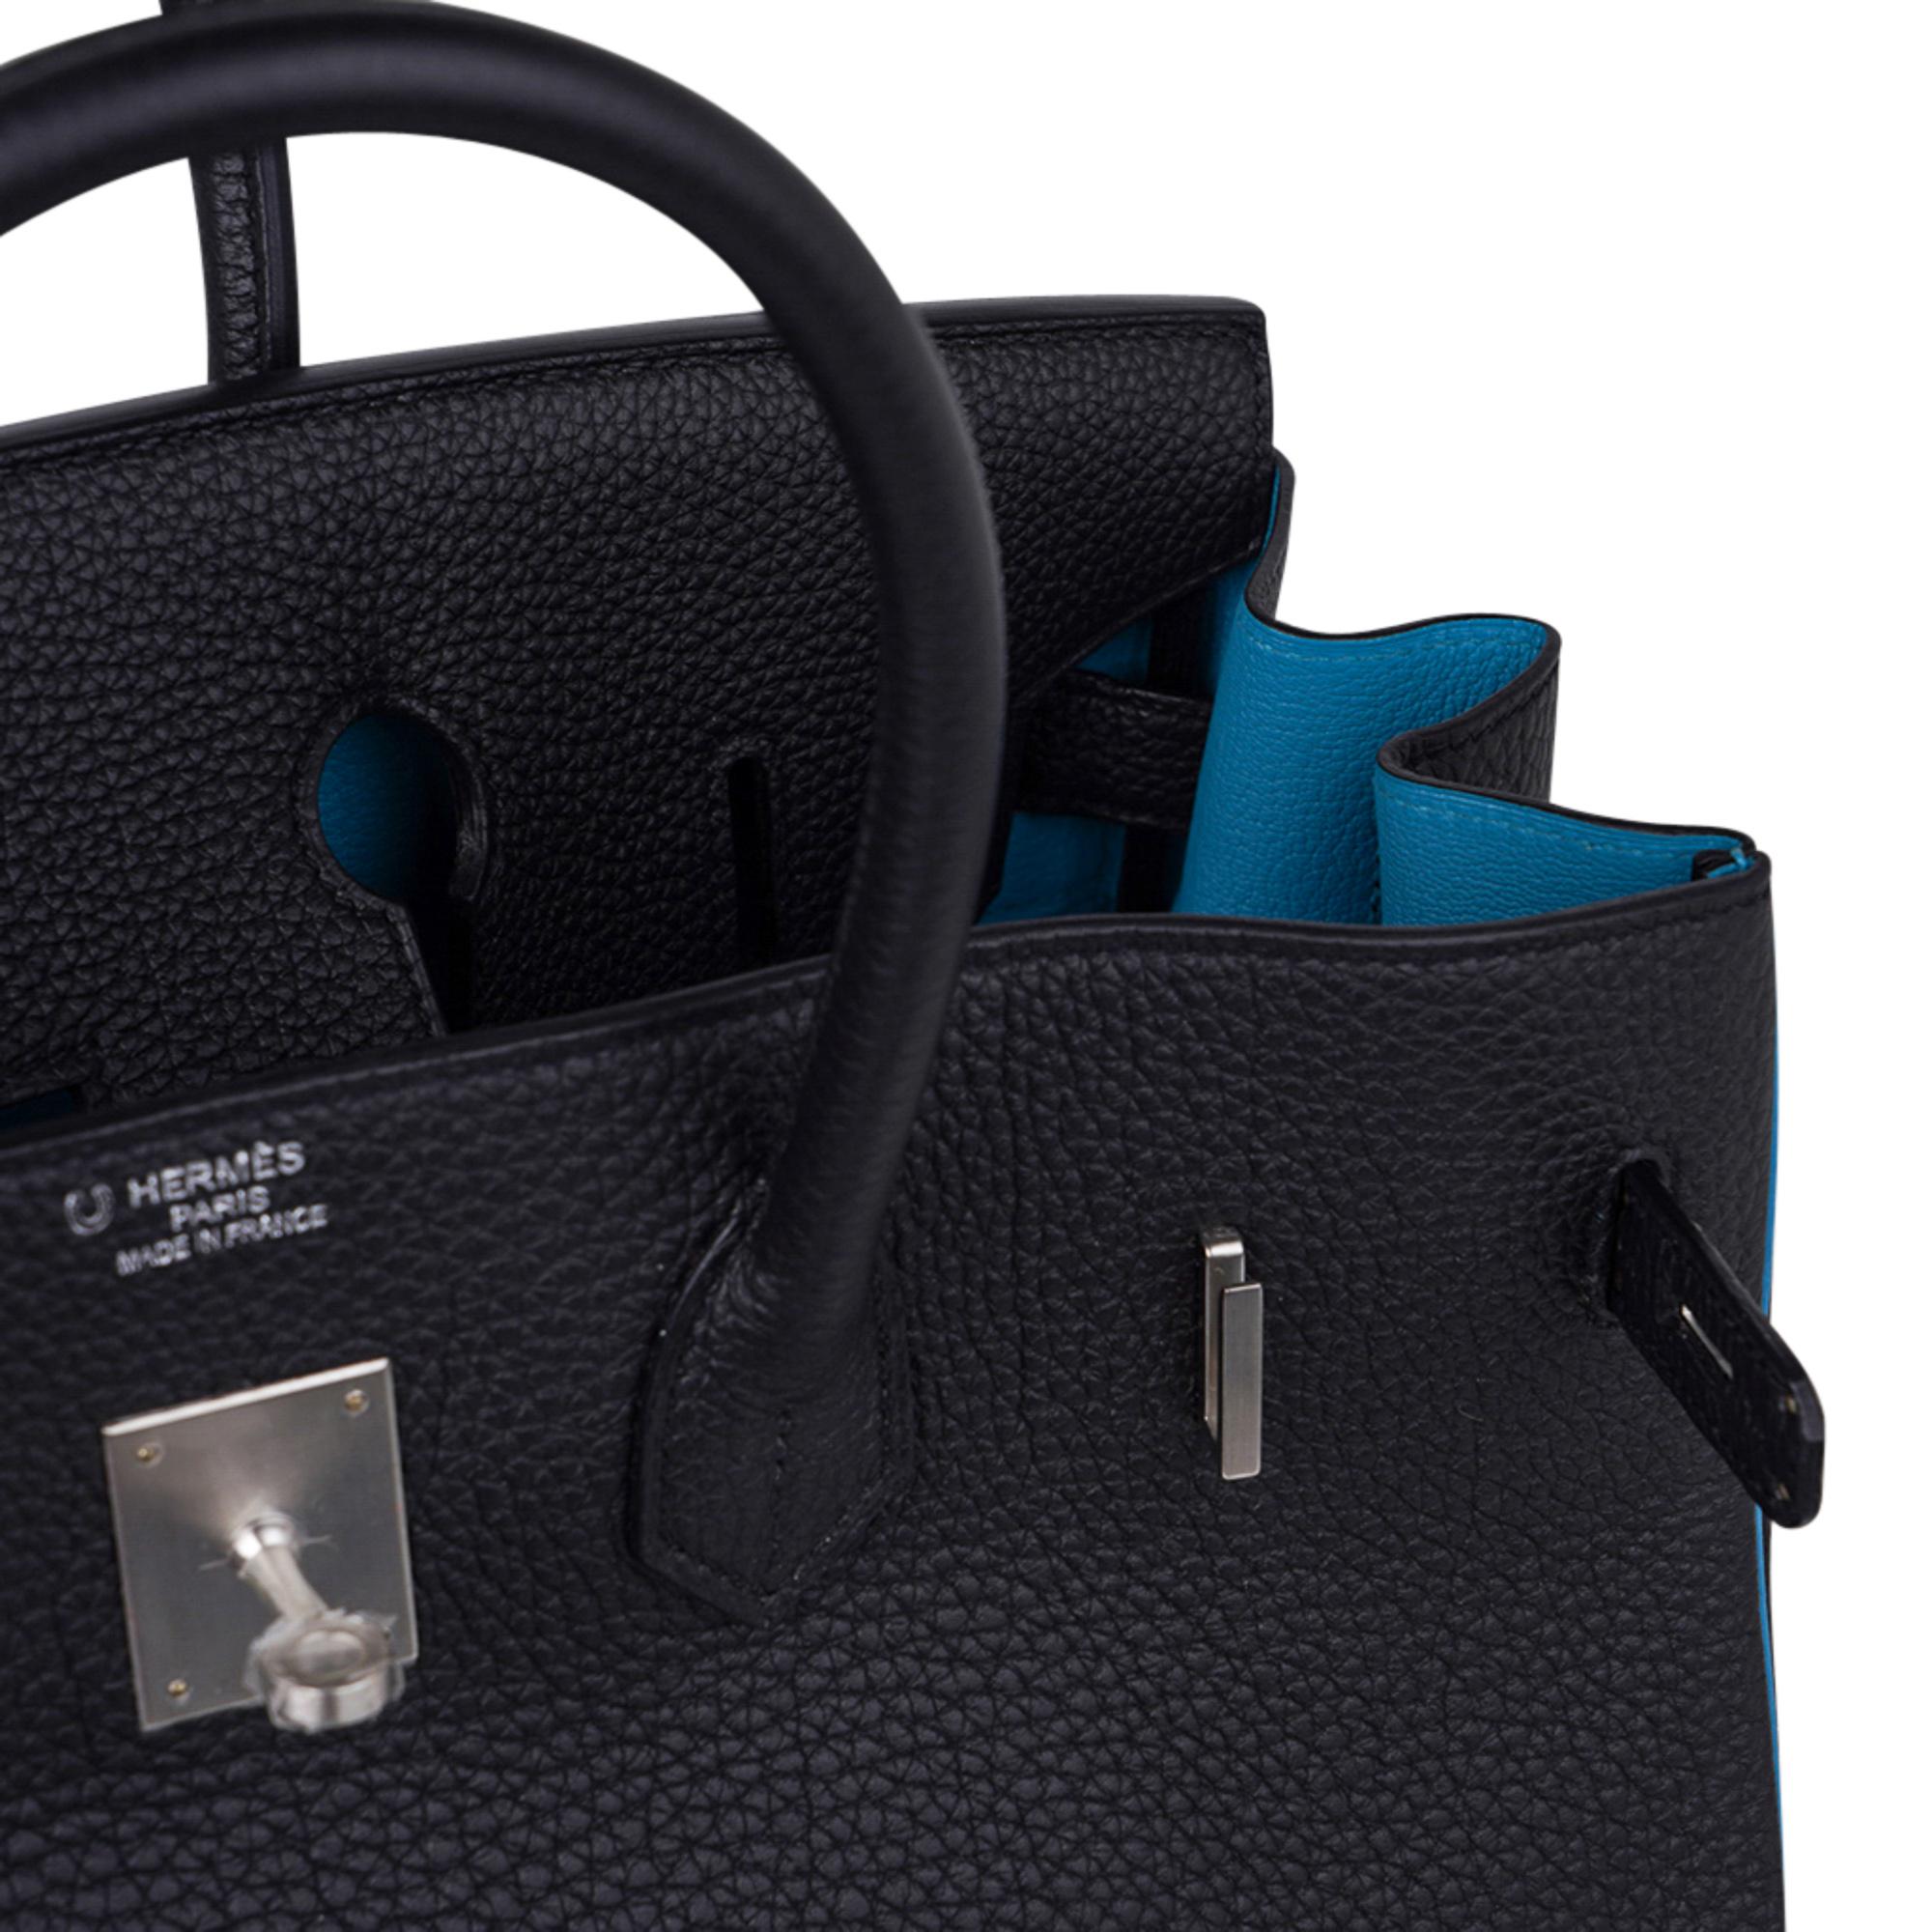 Mightychic propose un sac Hermès Birkin HSS 35 de couleur noire avec intérieur et passepoil turquoise. 
Un superbe sac Hermès Birkin en commande spéciale.
Unique avec un matériel rare en palladium brossé.
Le cuir souple Togo est résistant aux